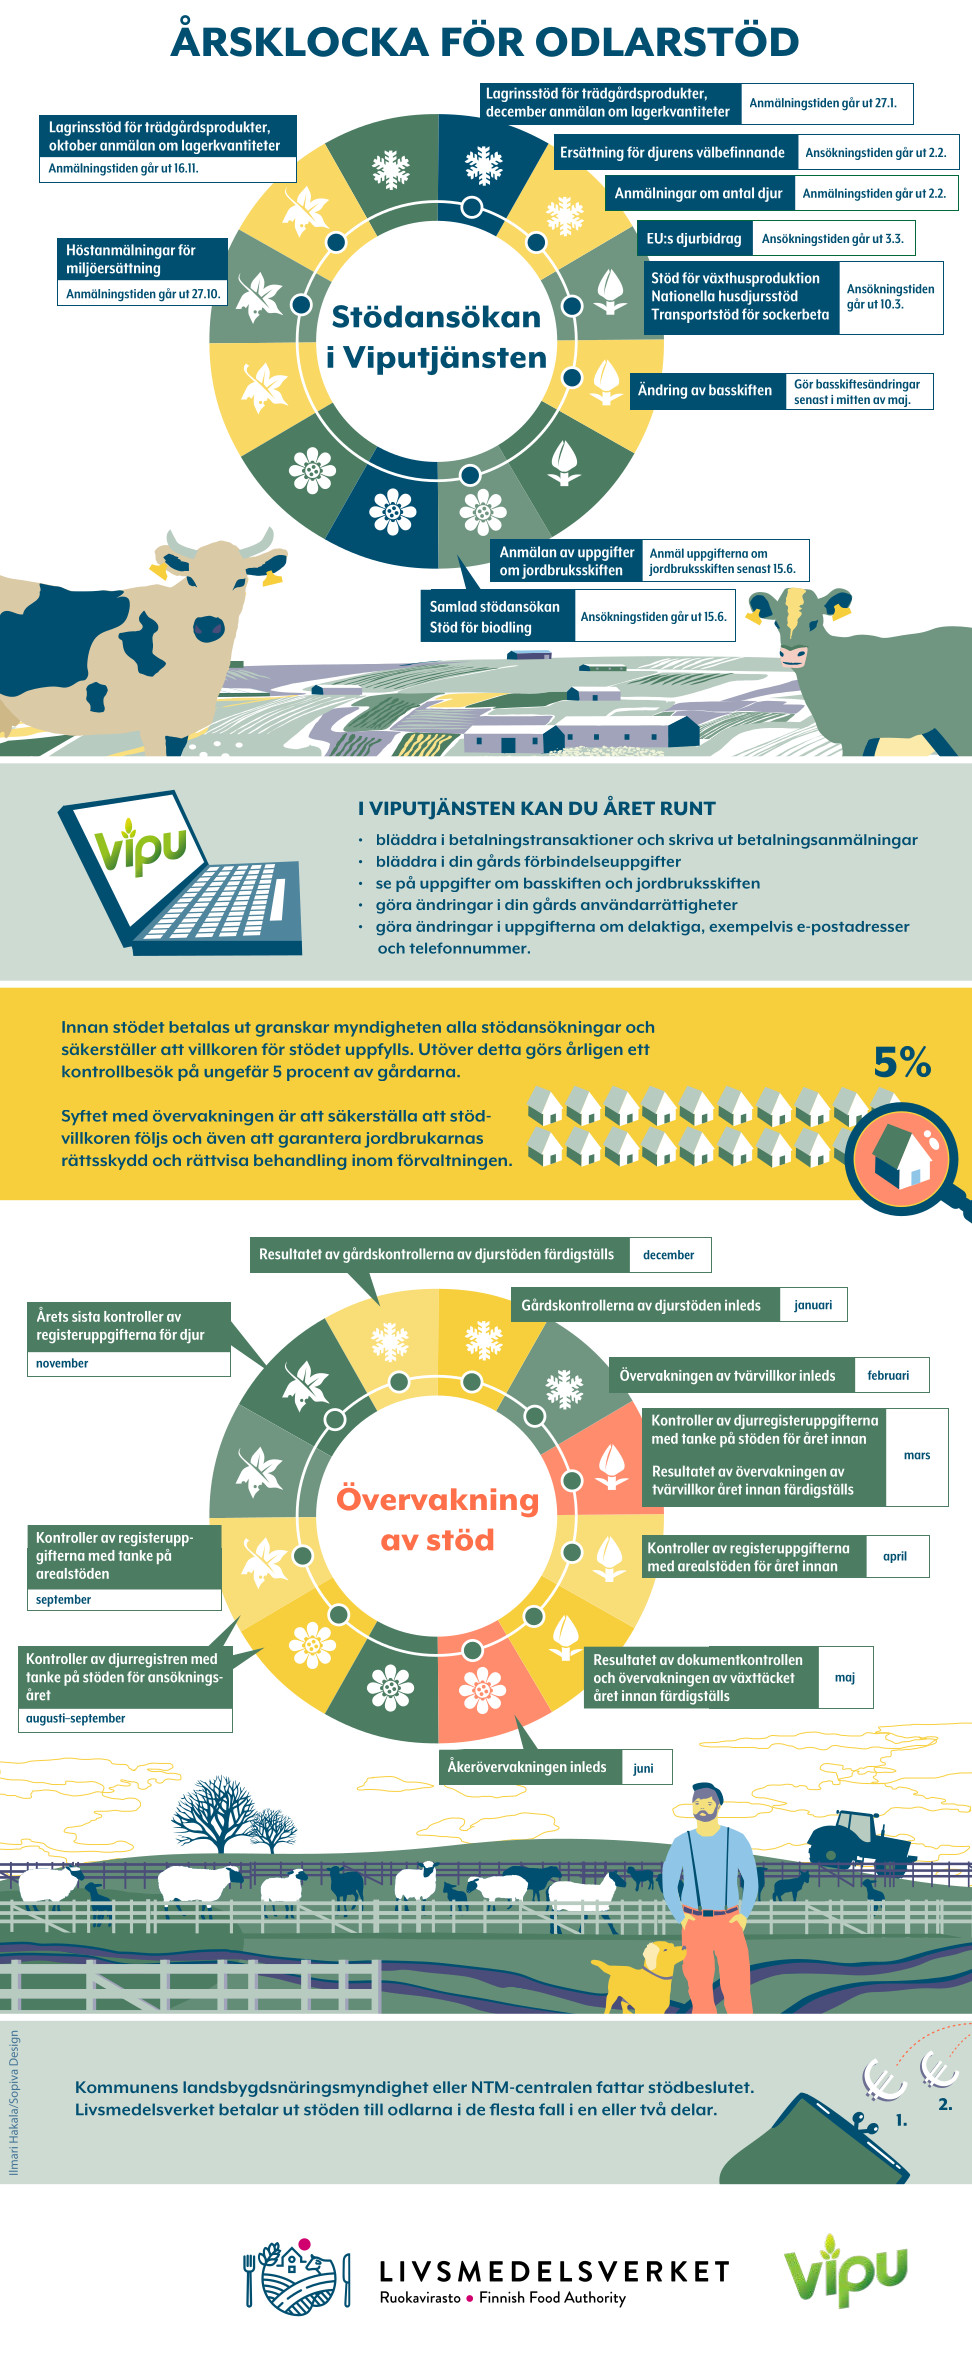 Infografiken: Årsklocka för odlarstöd